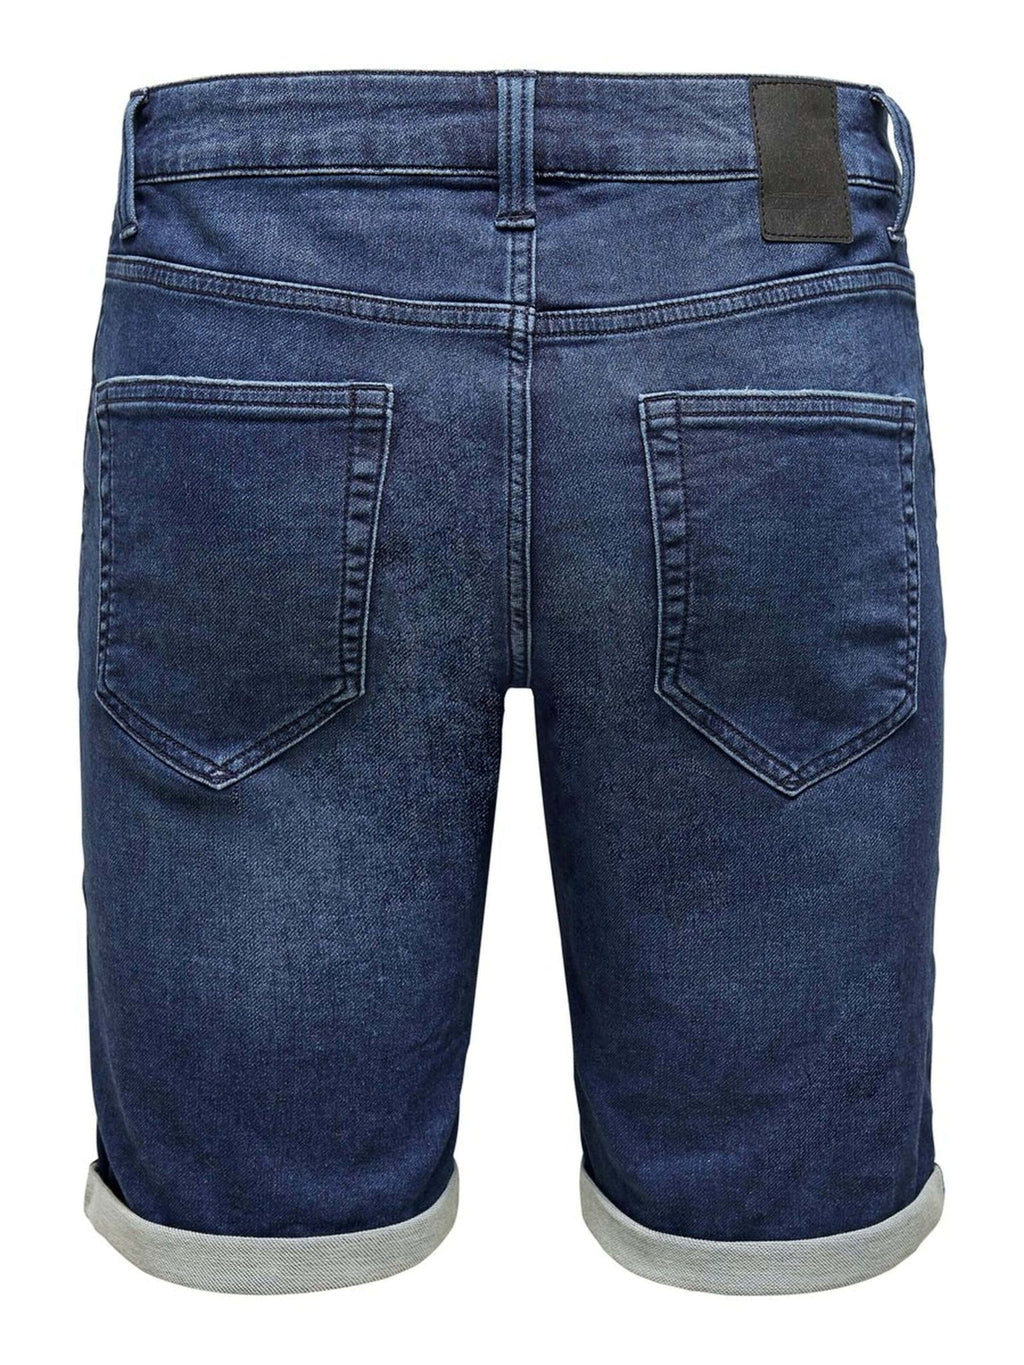 Pantalones cortos de mezclilla - mezclilla azul